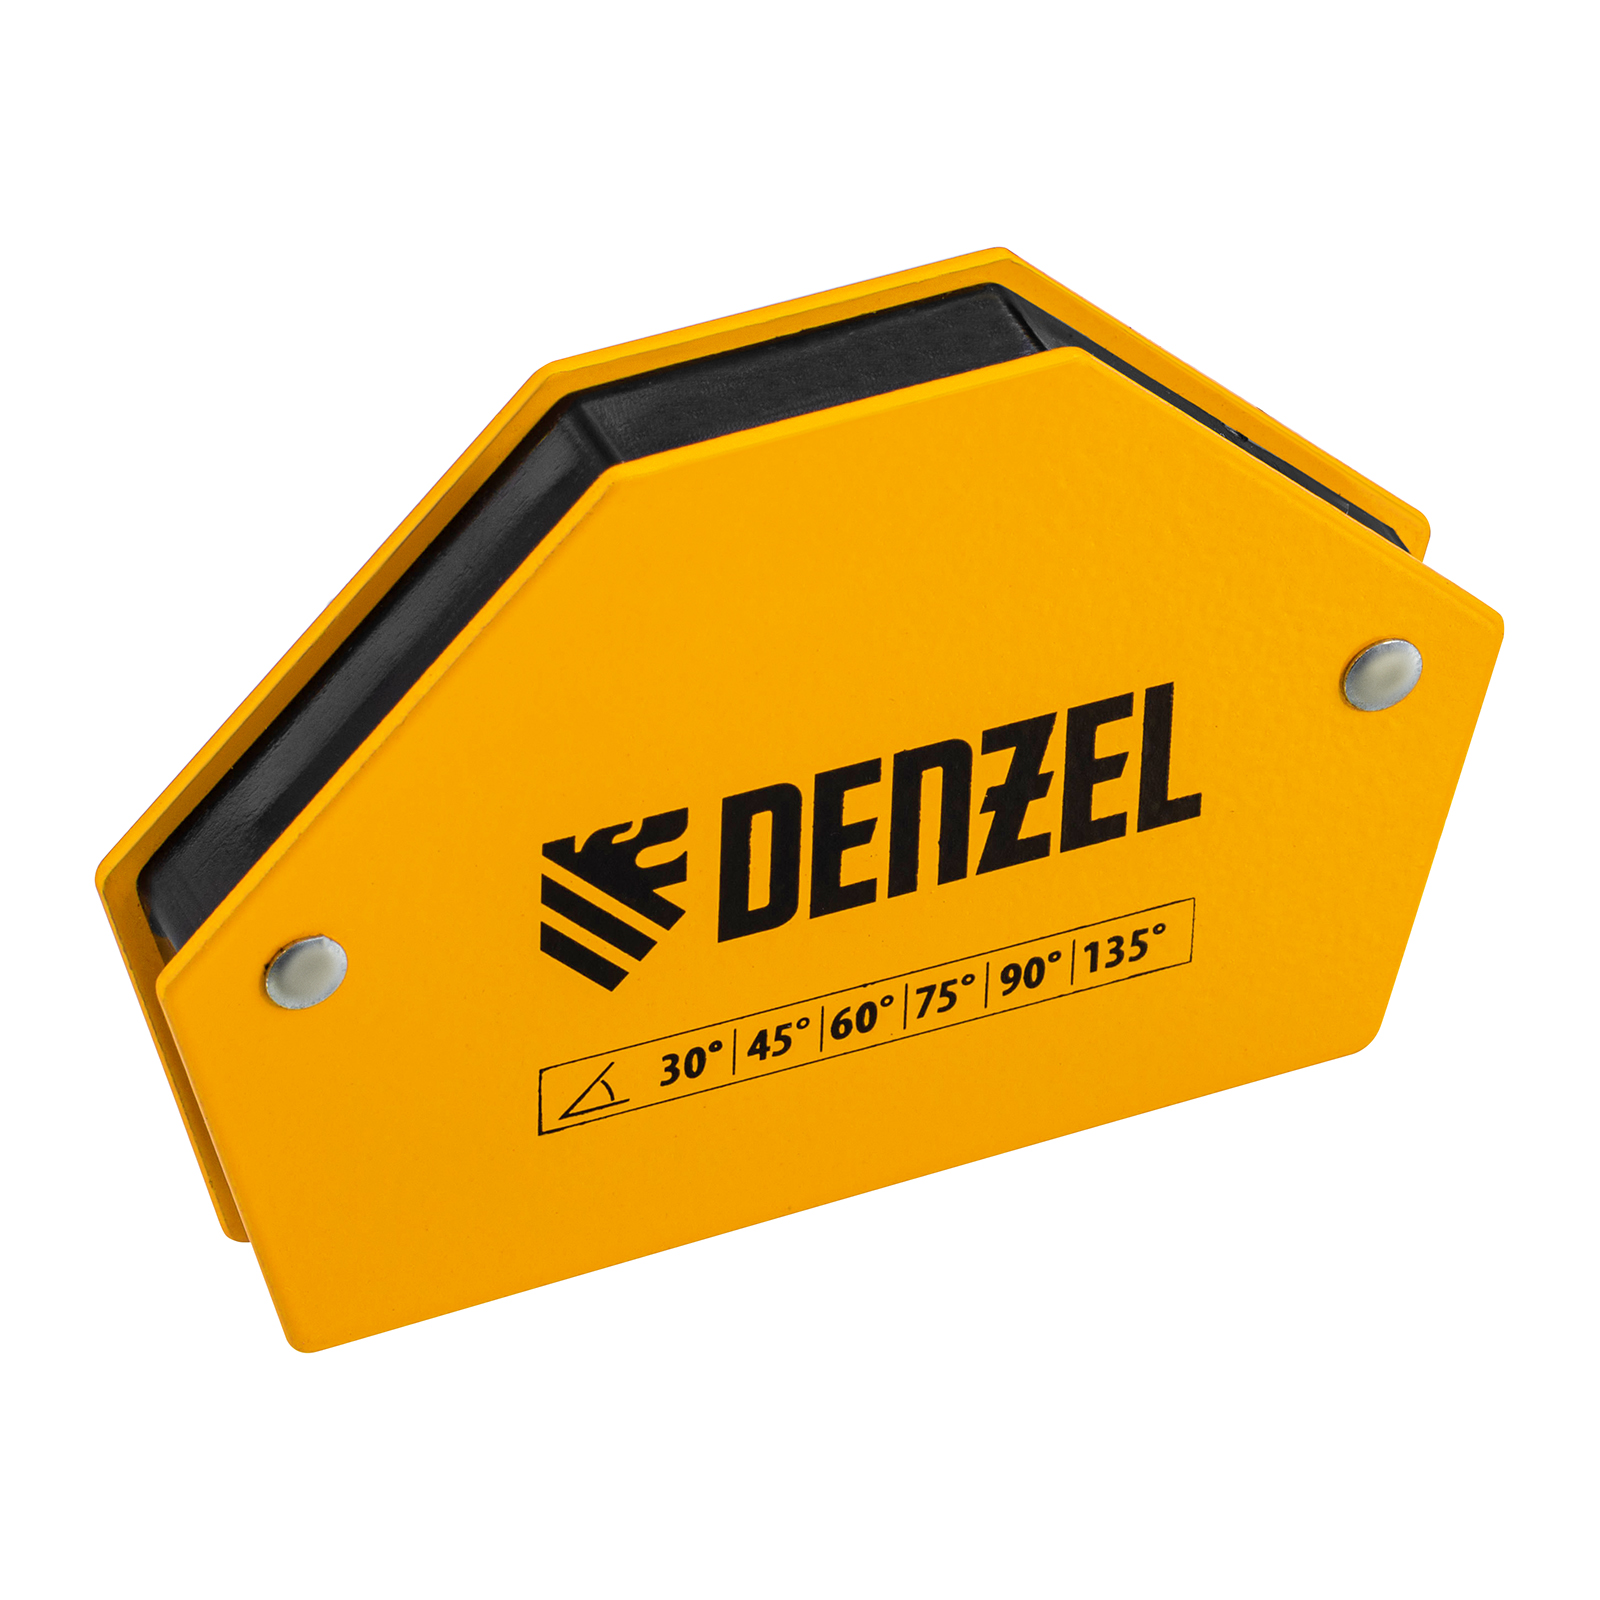 Фиксатор магнитный для сварочных работ DENZEL усилие 25 LB, 30х45х60х75х90х135 град. 97552 фиксатор магнитный отключаемый для сварочных работ denzel усилие 30 lb 45х90 град 97561